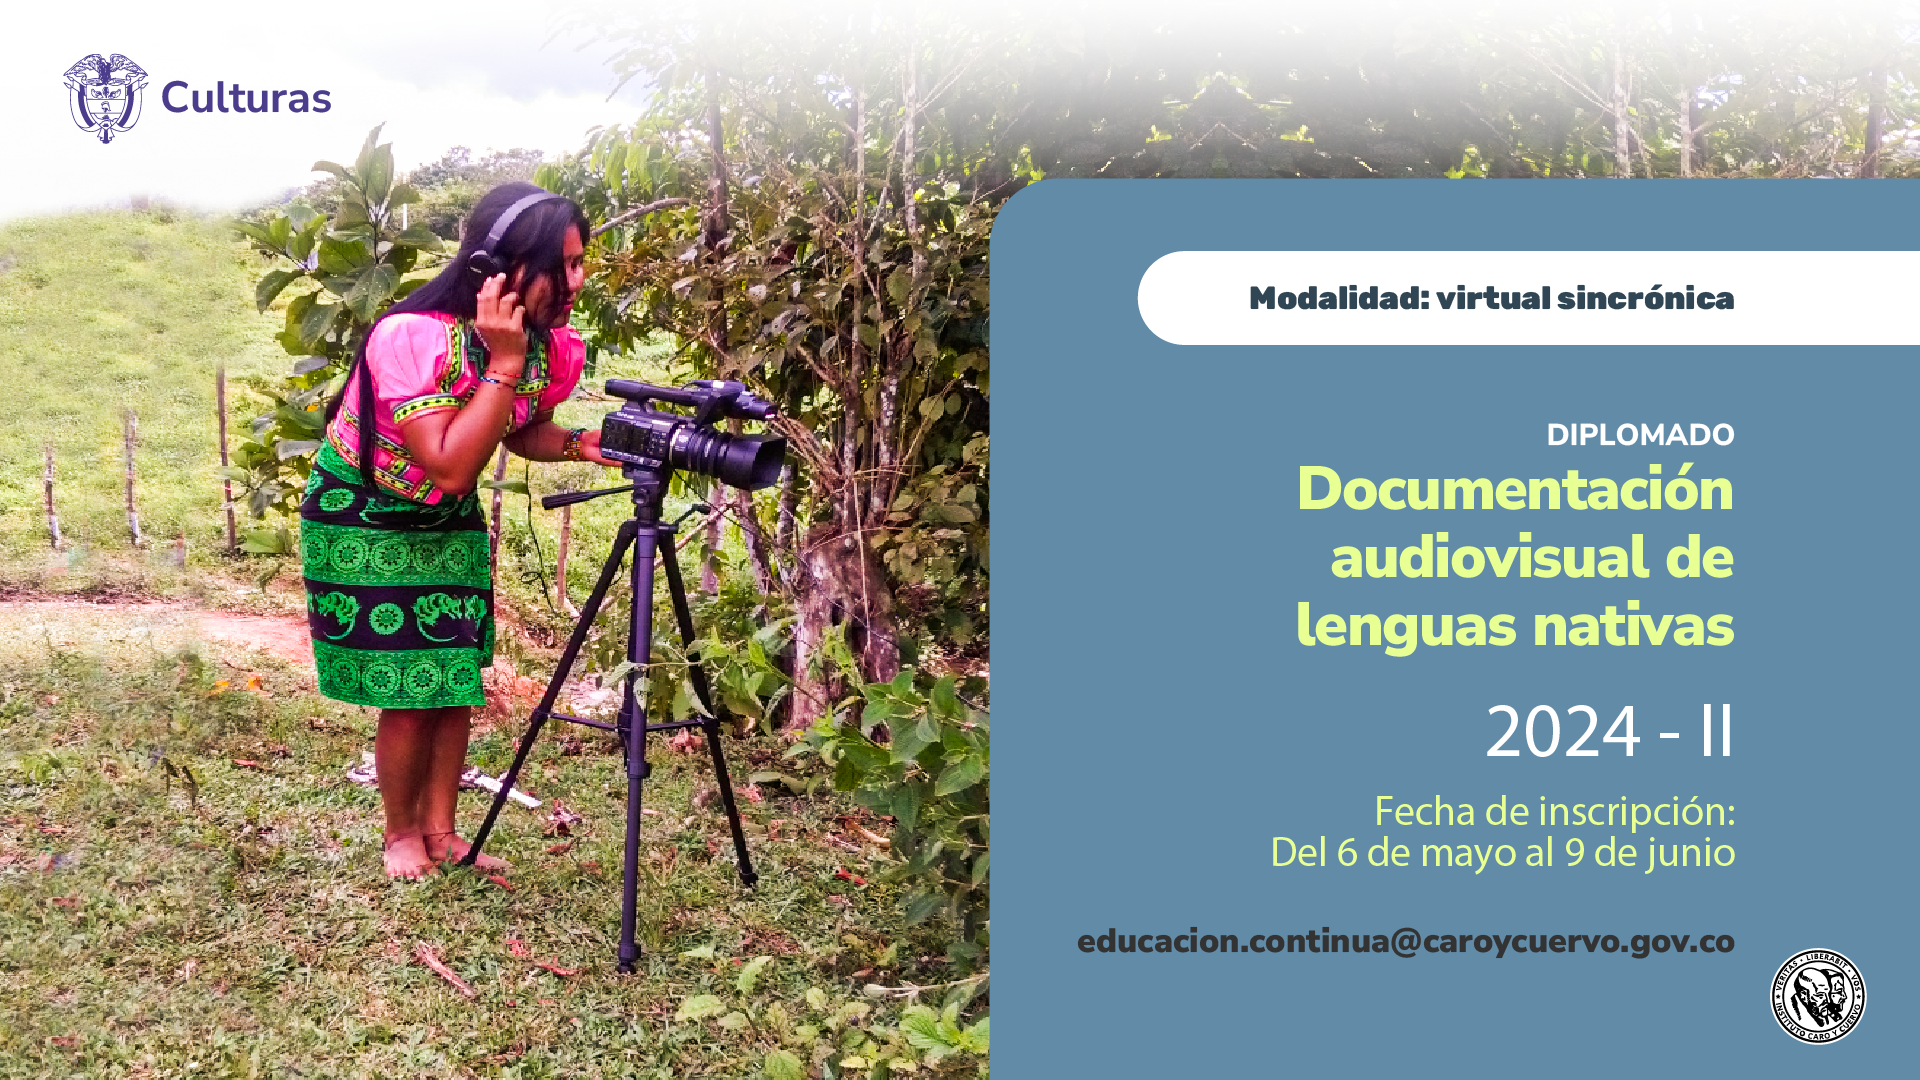 Diseño gráfico que provee información sobre la apertura de inscripciones al diplomado en Documentación audiovisual de lenguas nativas – semestre II.